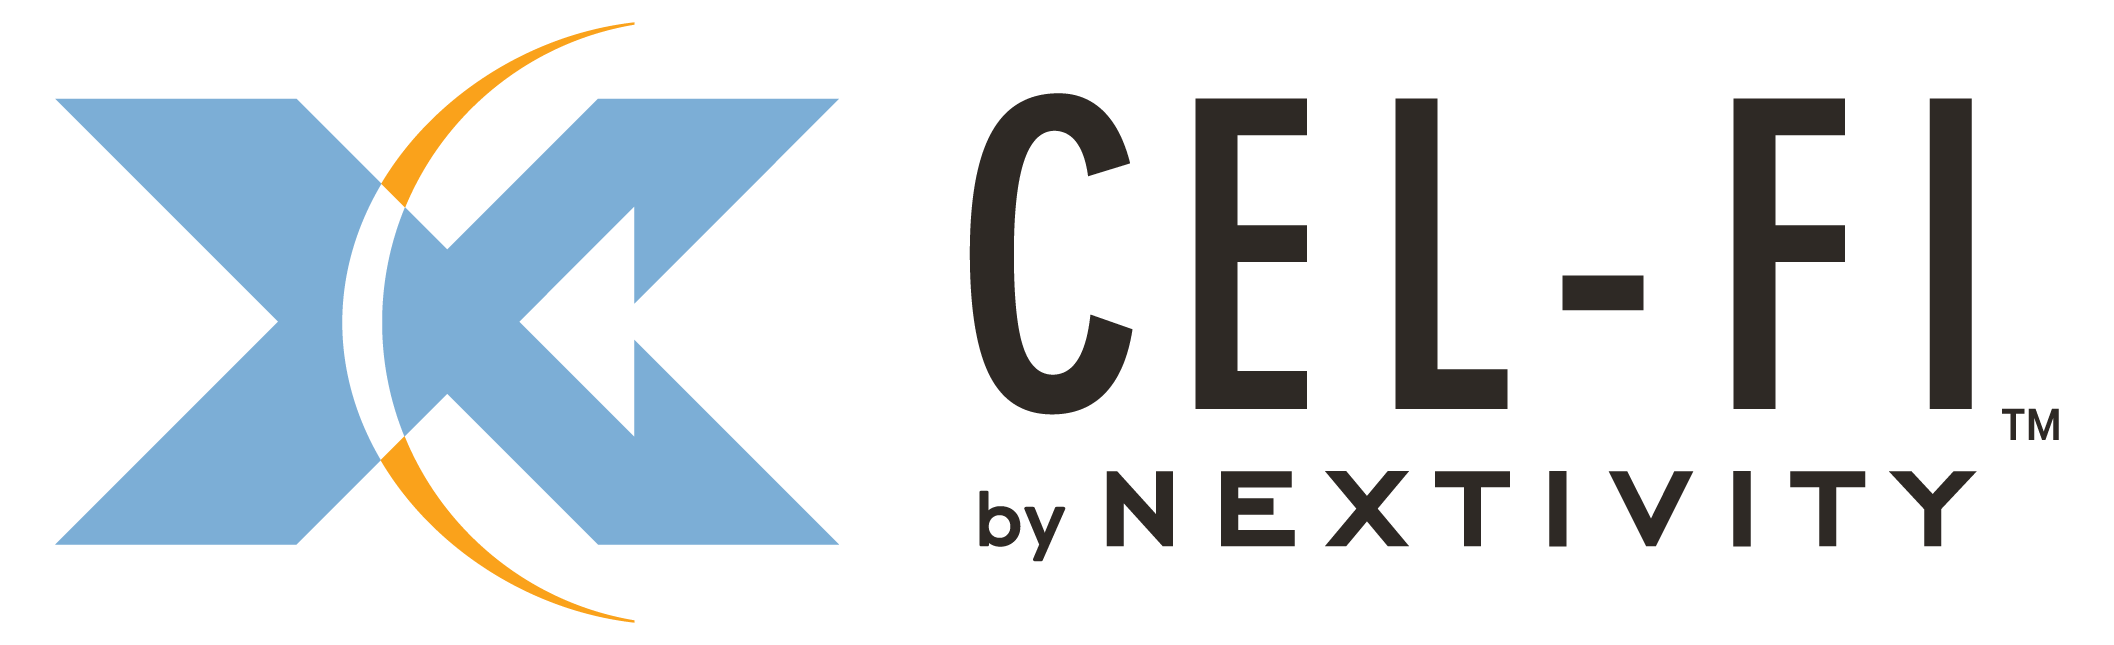 Cel-Fi by Nextivity